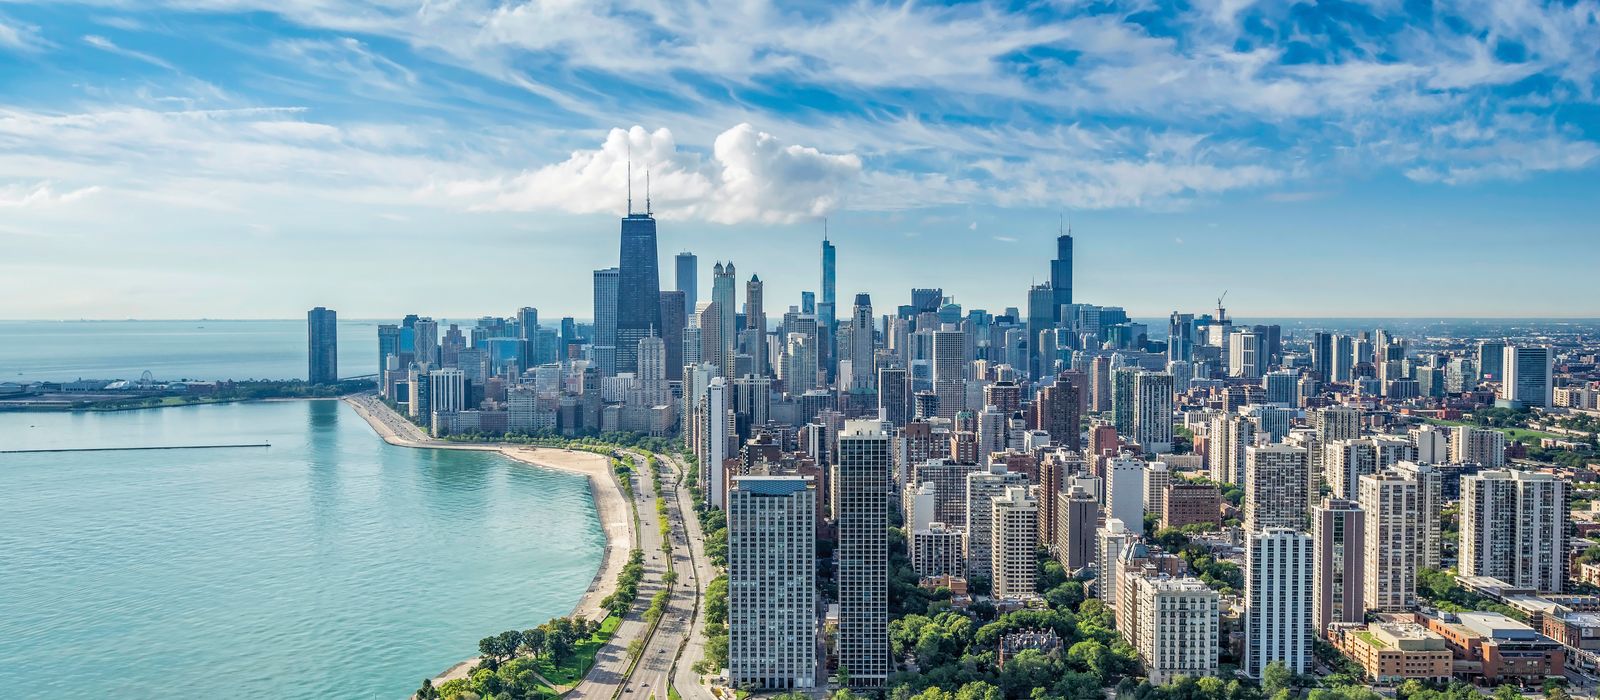 Die Skyline von Chicago